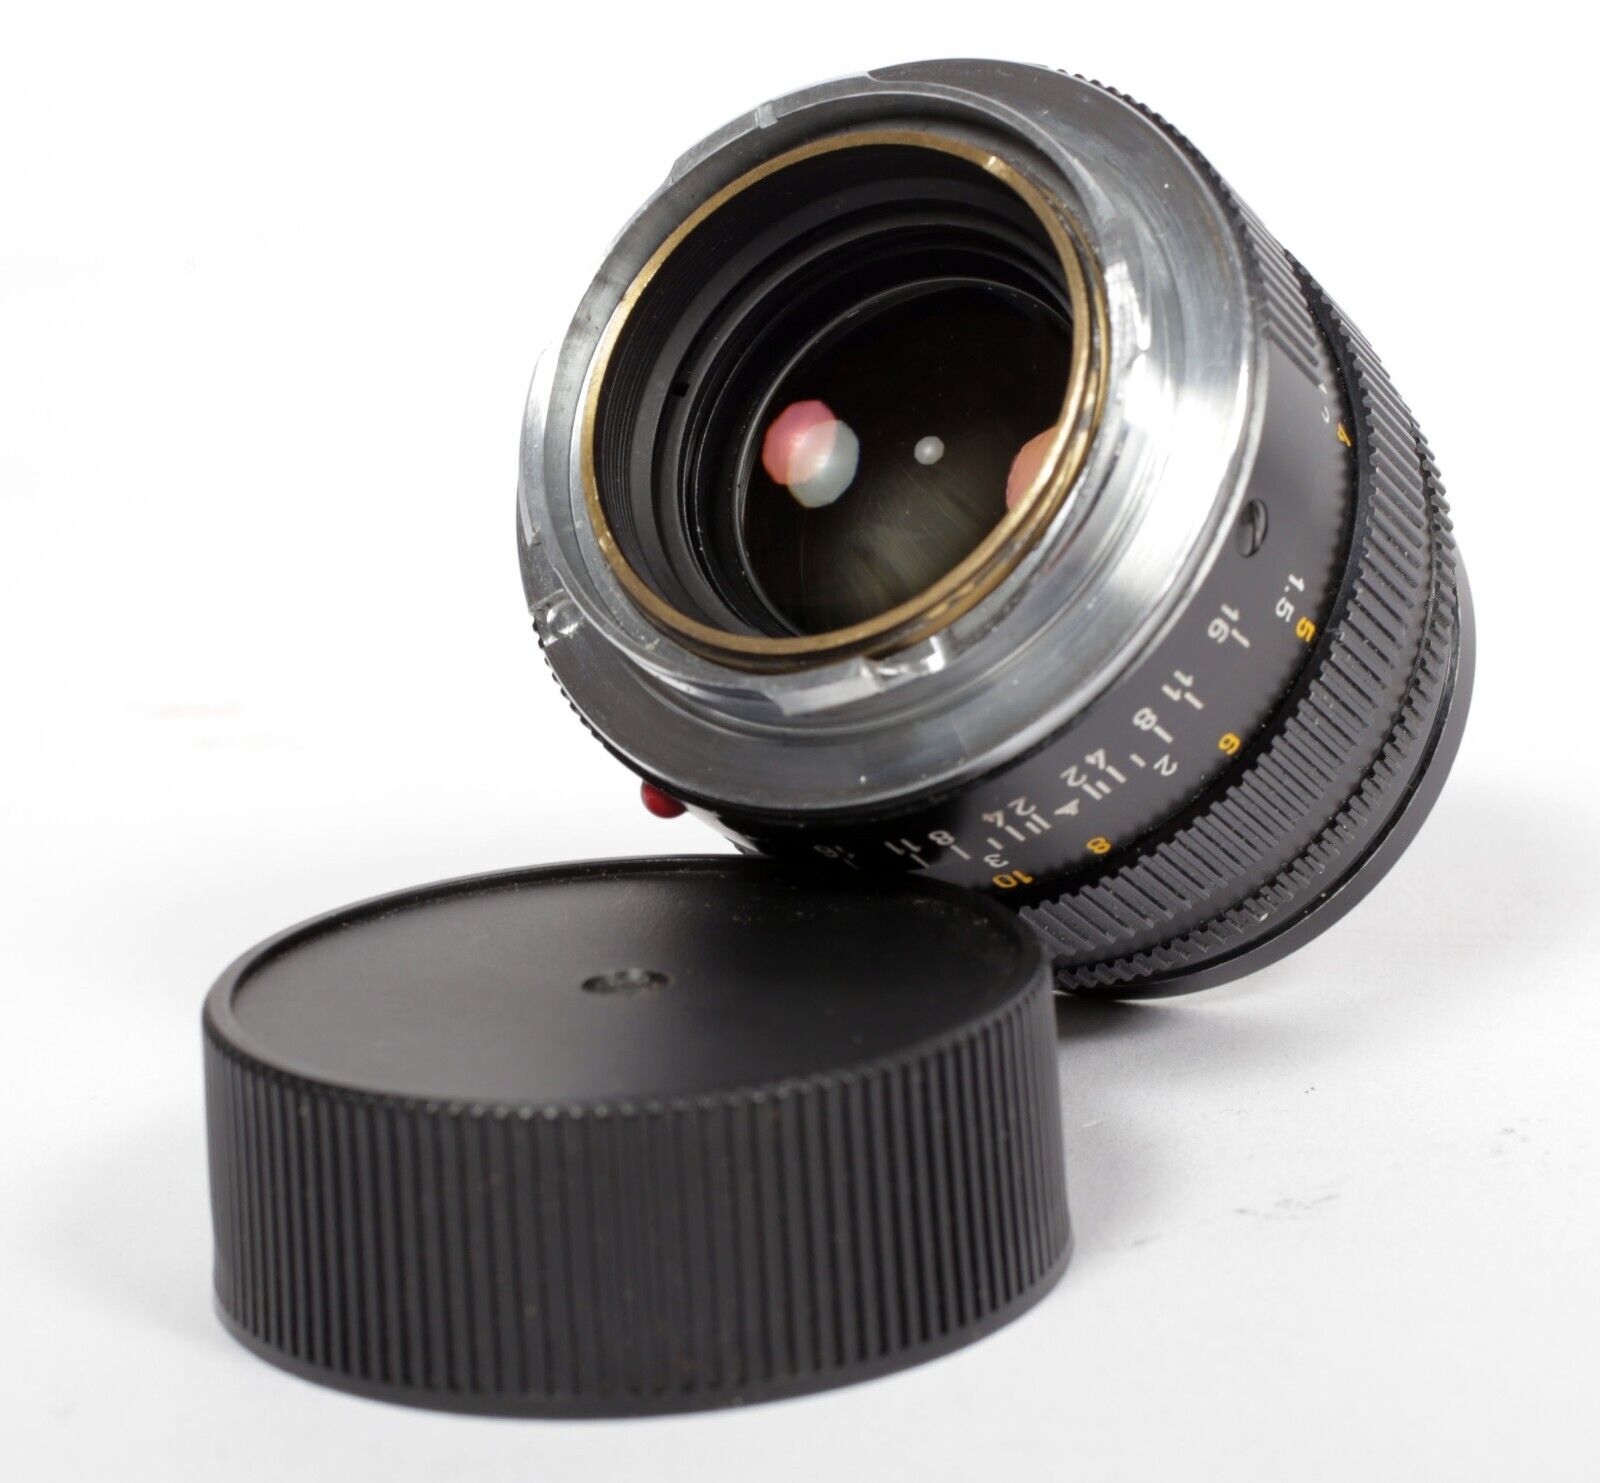 Leica Leitz Summilux M 50mm F1.4 lens V2 E43 + 12586 shade #309 